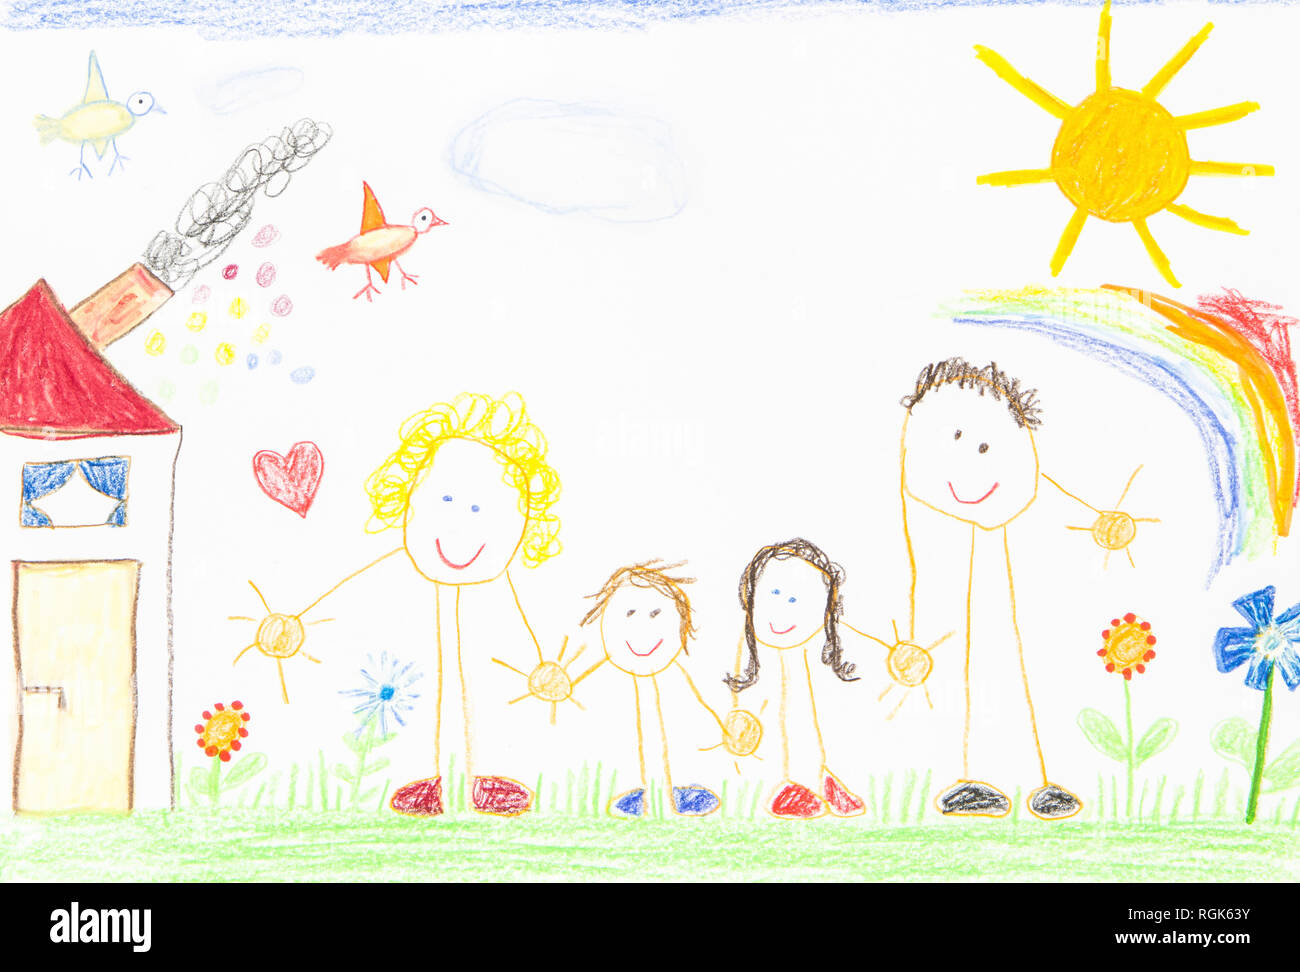 Disegno per bambini, famiglia felice con la casa, il giardino, il sole e il Rainbow Foto Stock